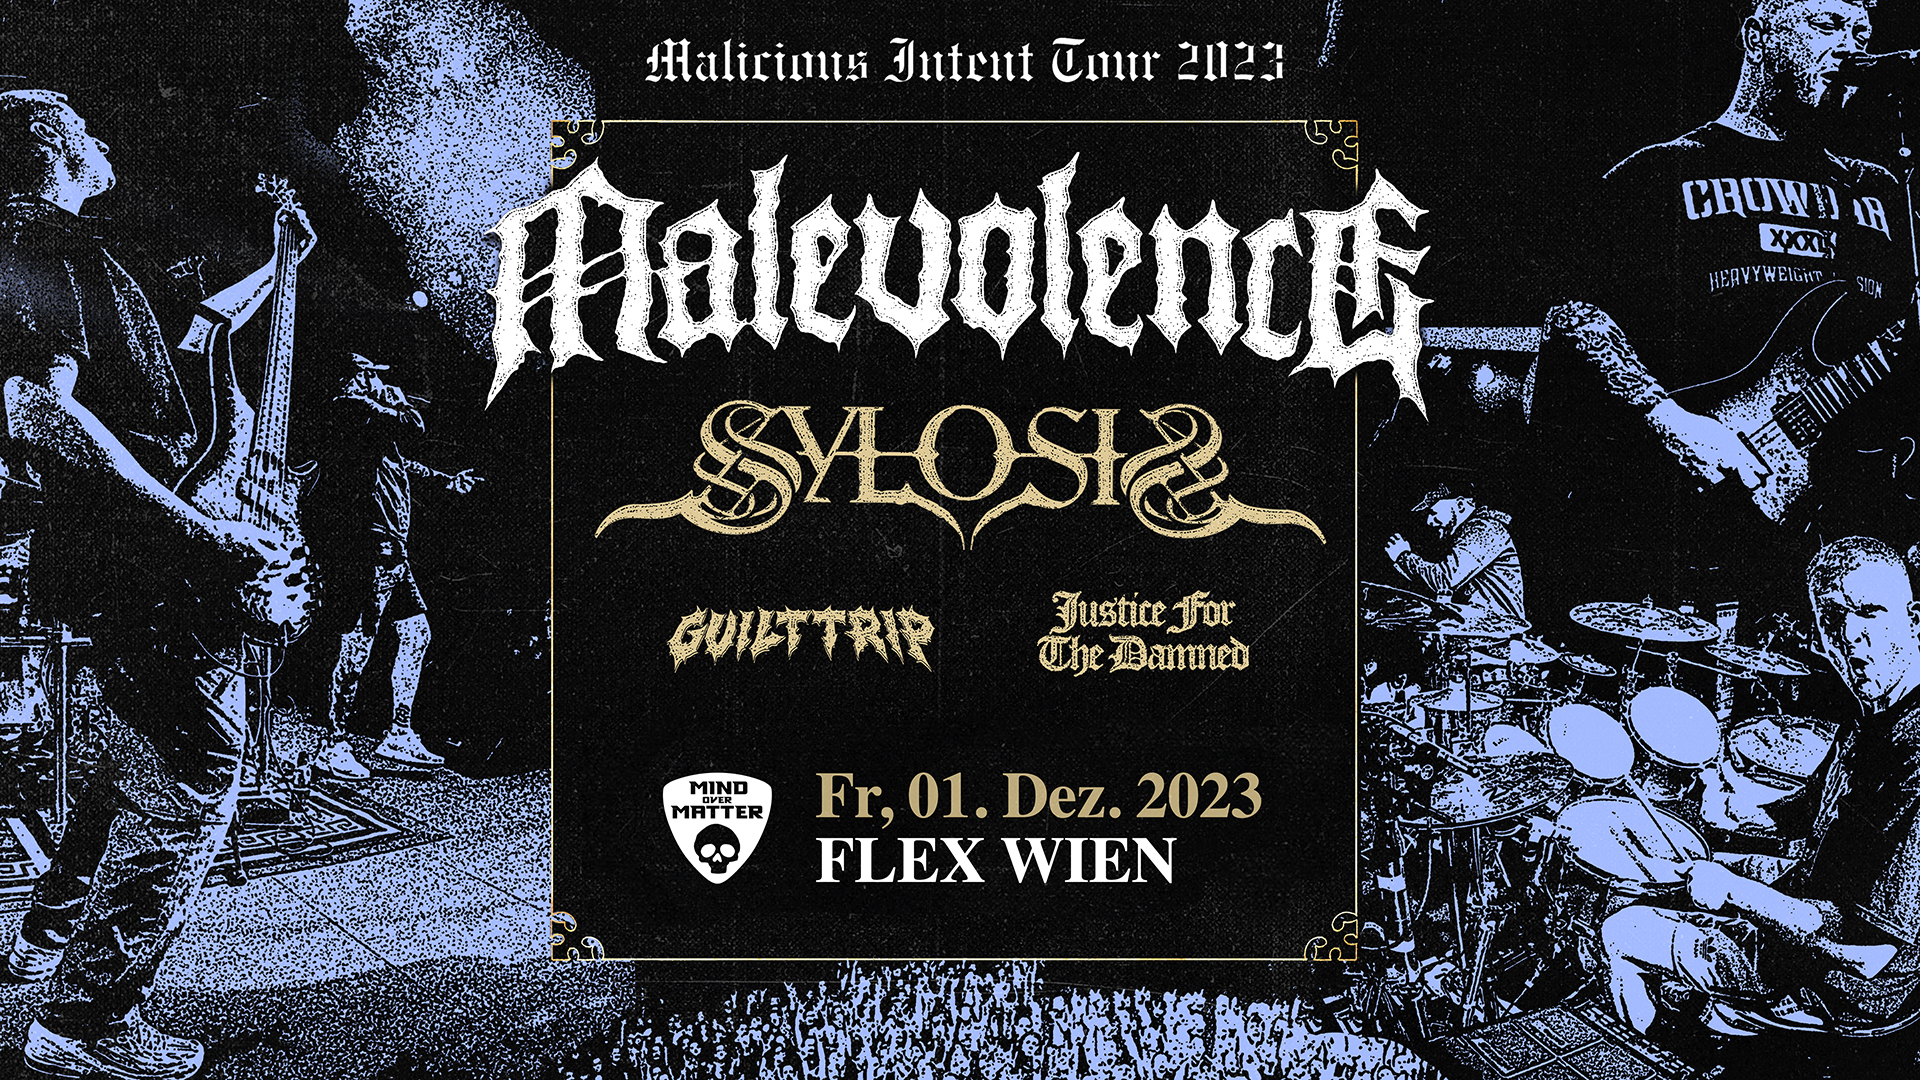 Malevolence am 1. December 2023 @ Flex - Halle.